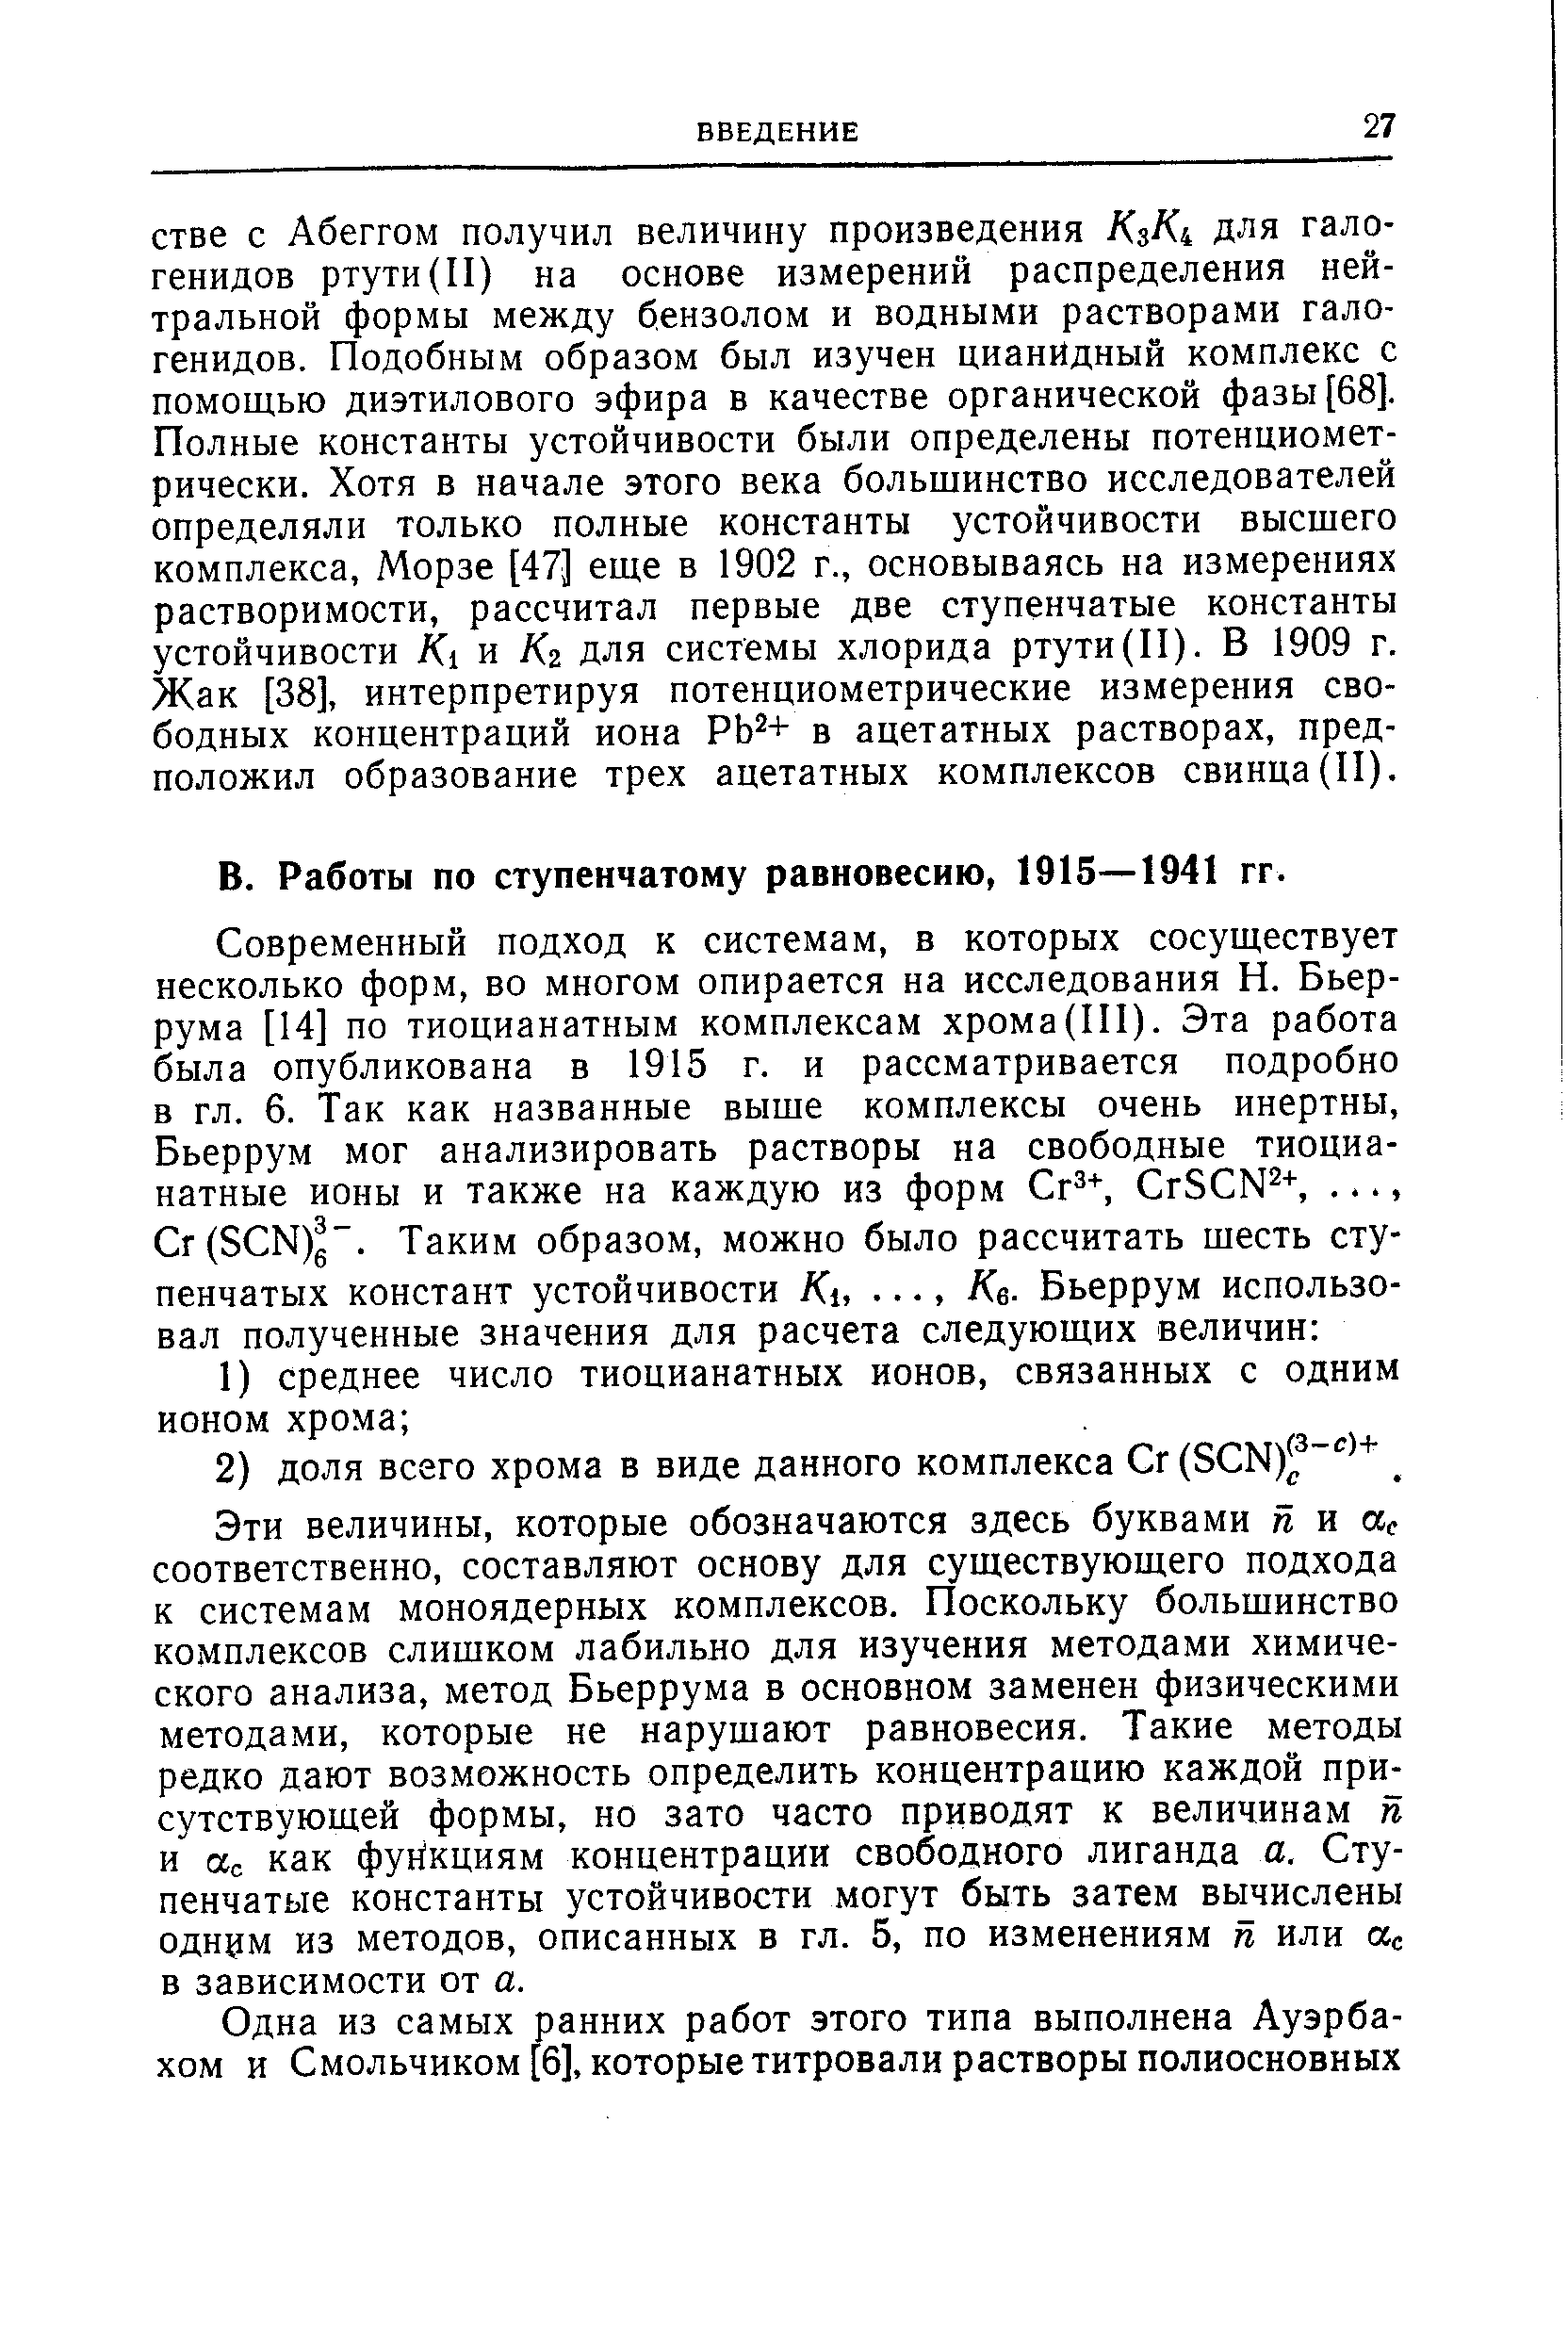 Работы по ступенчатому равновесию, 1915—1941 гг.